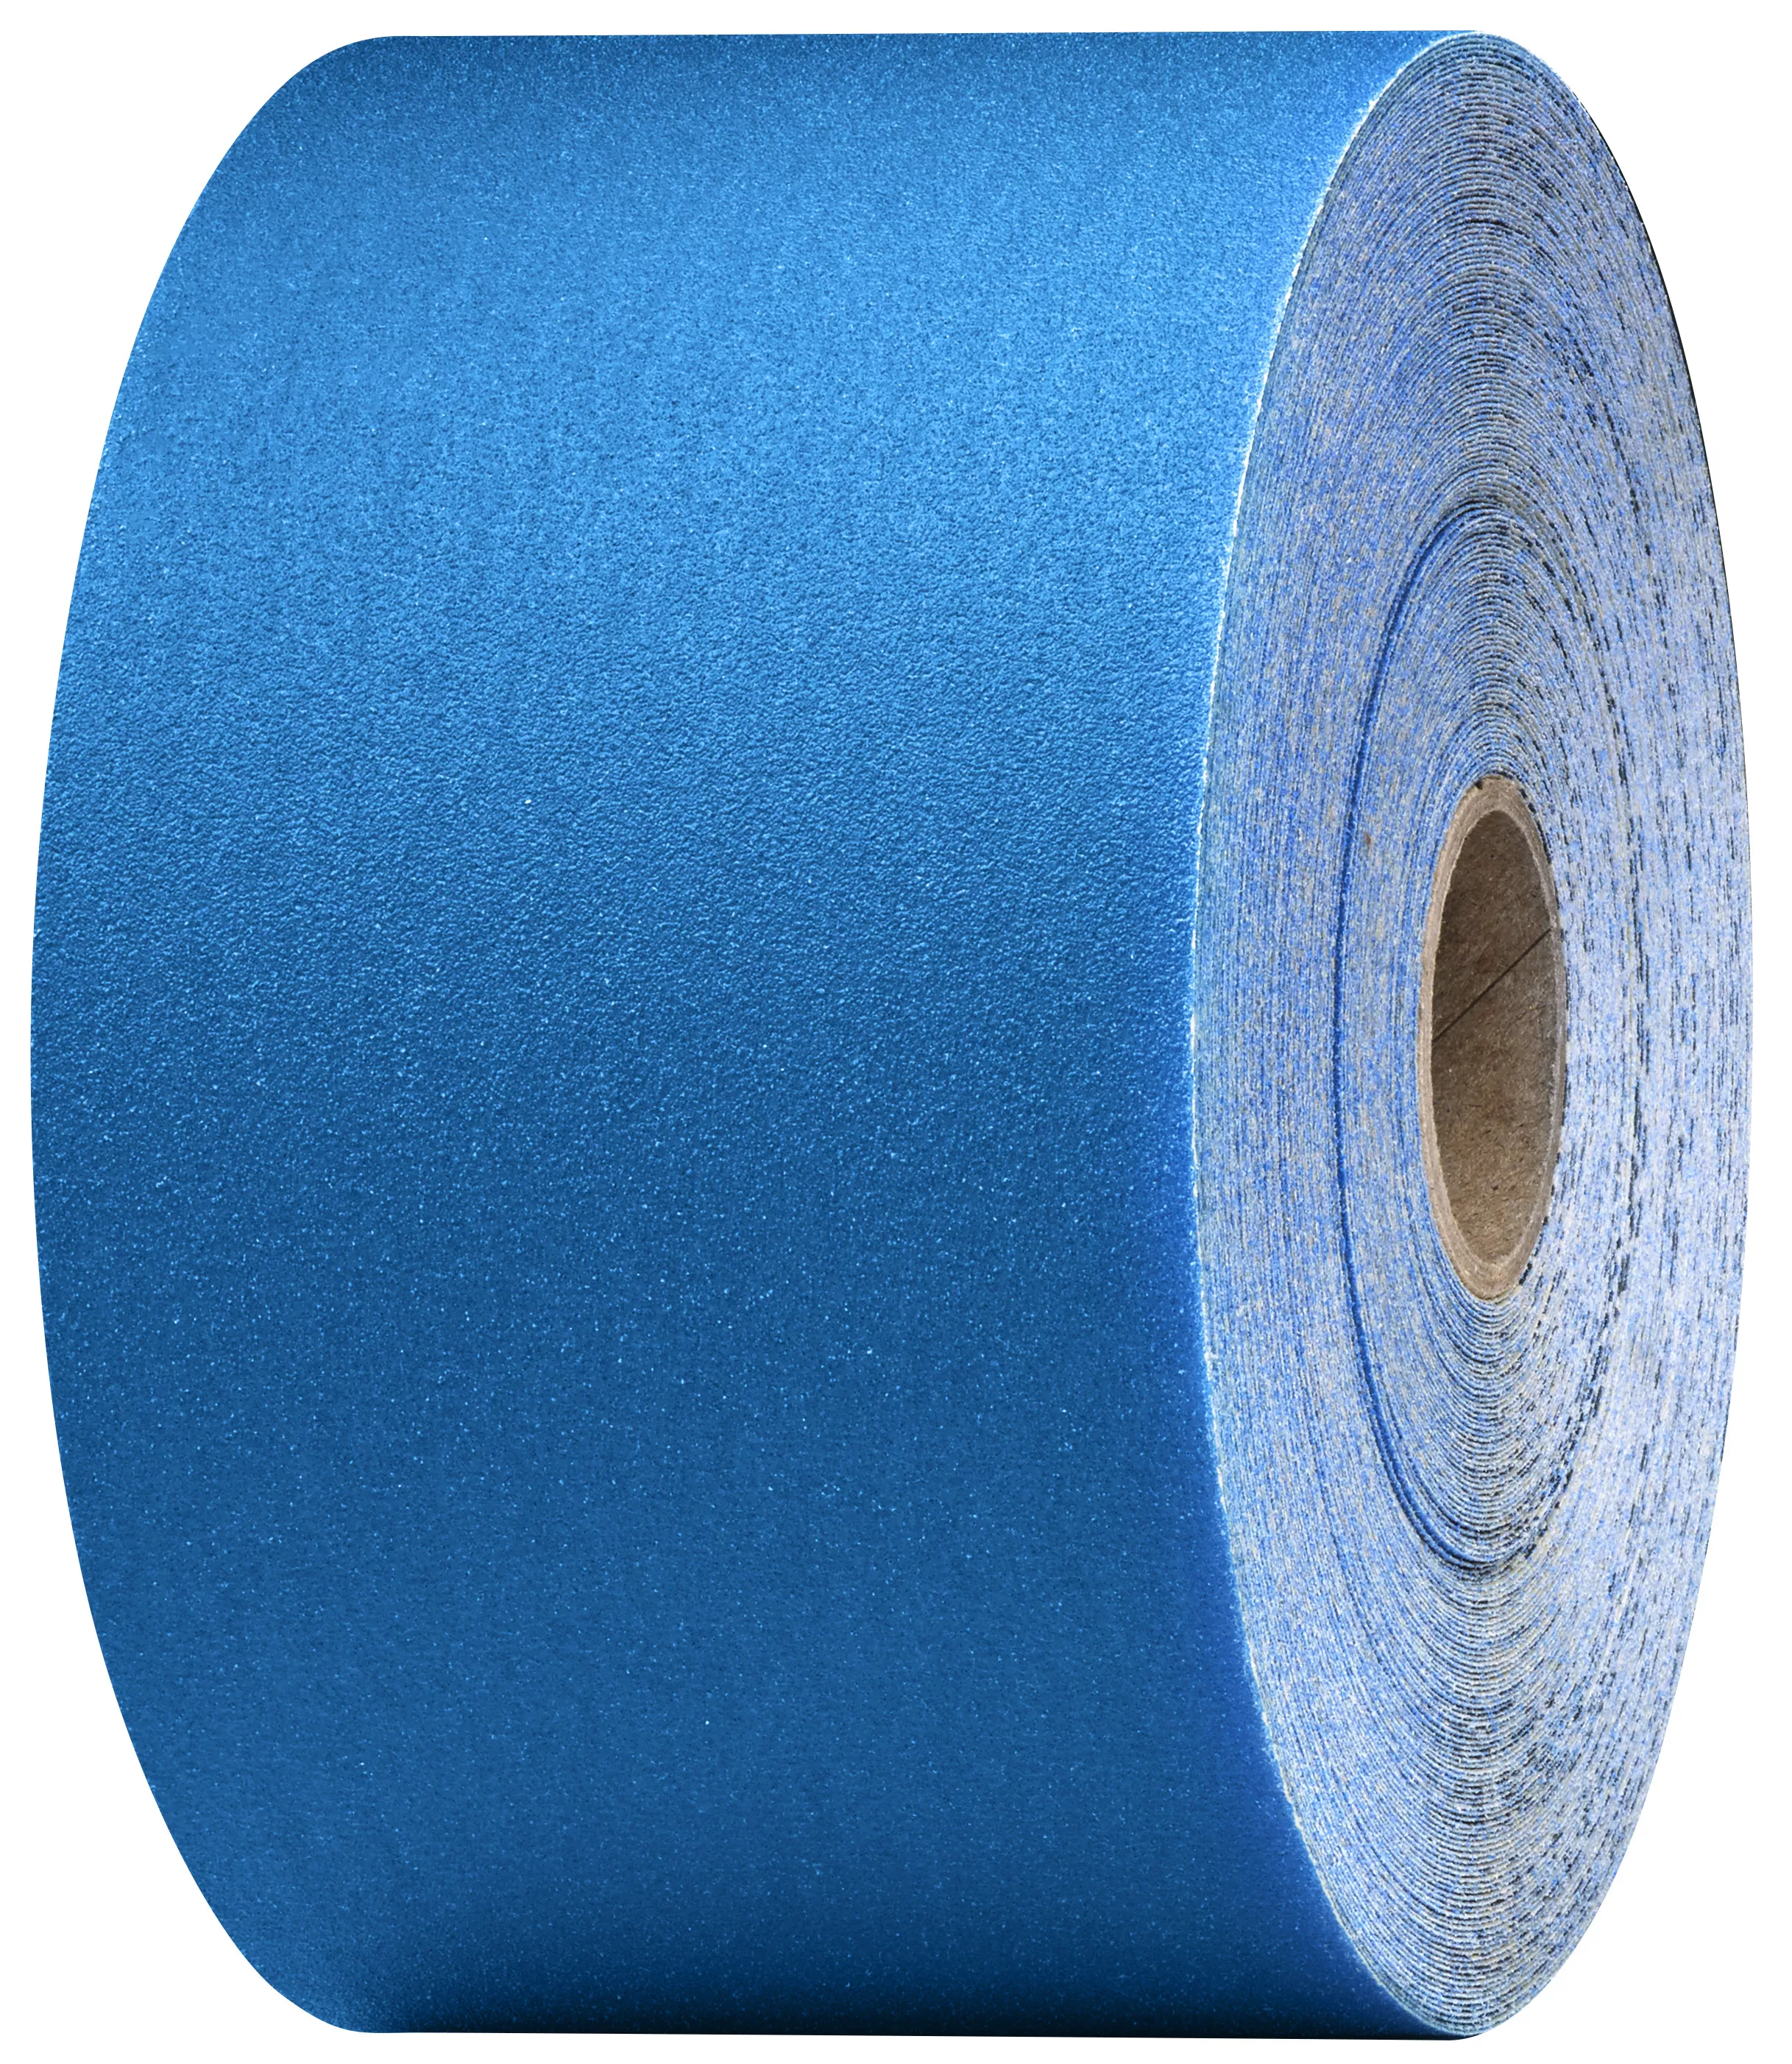 3M™ Stikit™ Blue Abrasive Sheet Roll, 36223, 240 grade, 2-3/4 in x 30
yd, 5 rolls per case